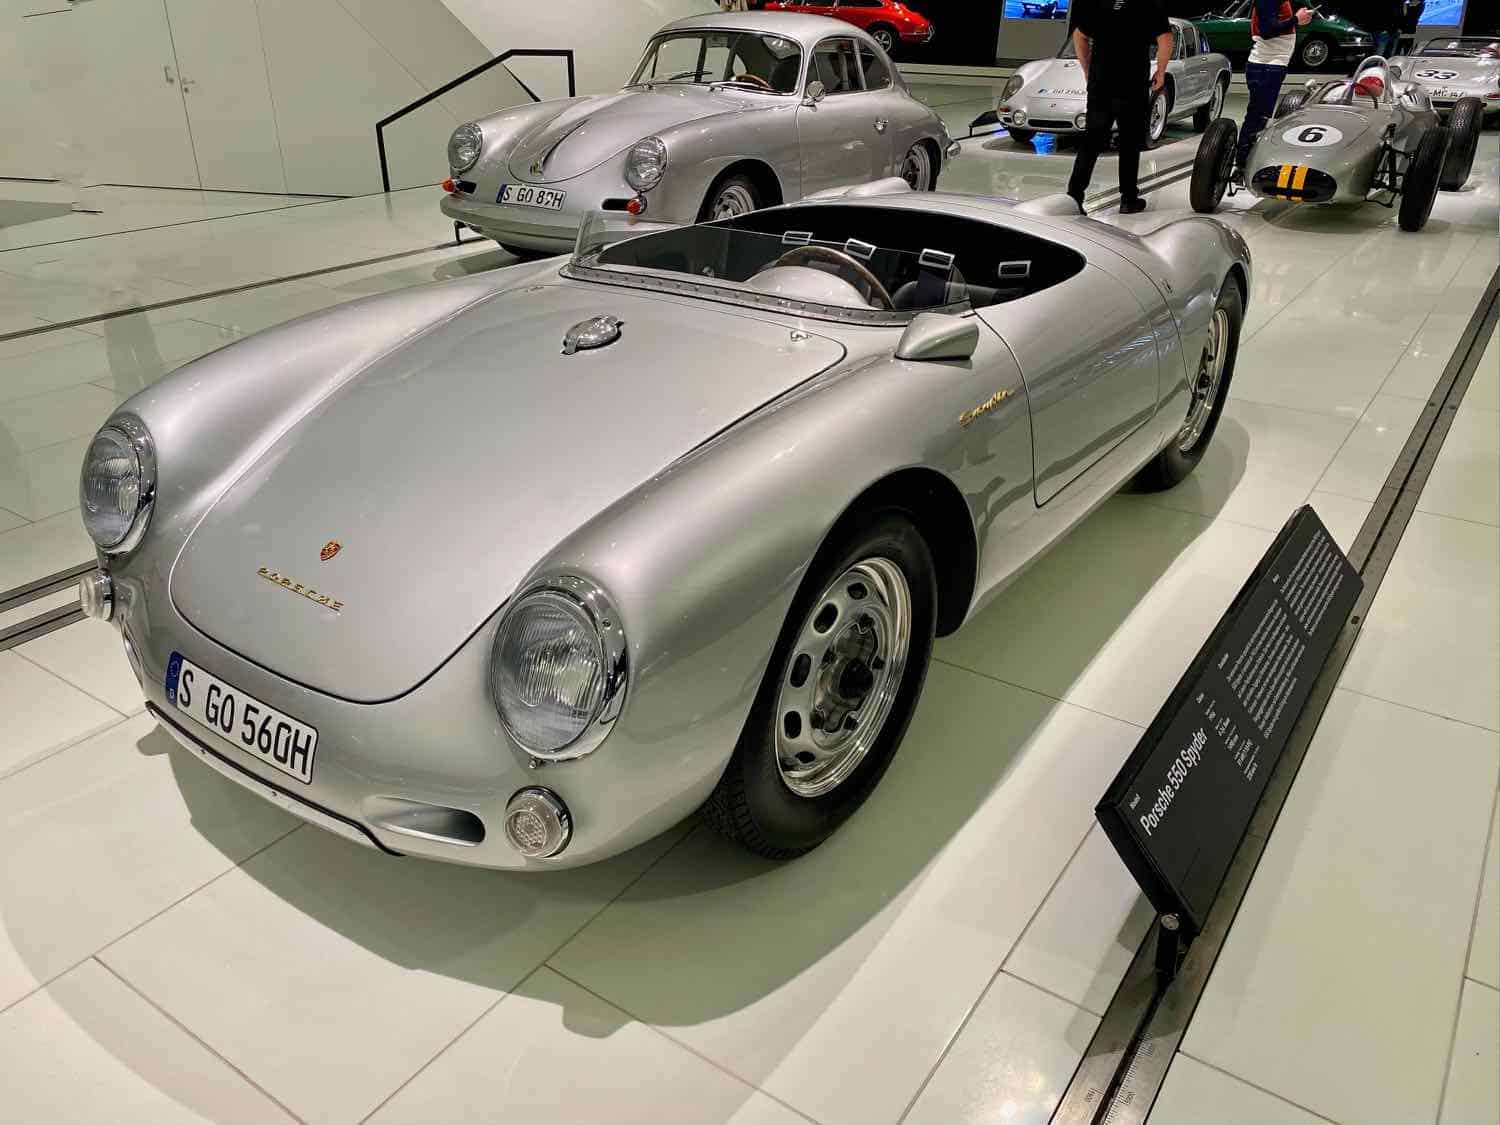 Silver Porsche on display at the Porsche Museum in Stuttgart